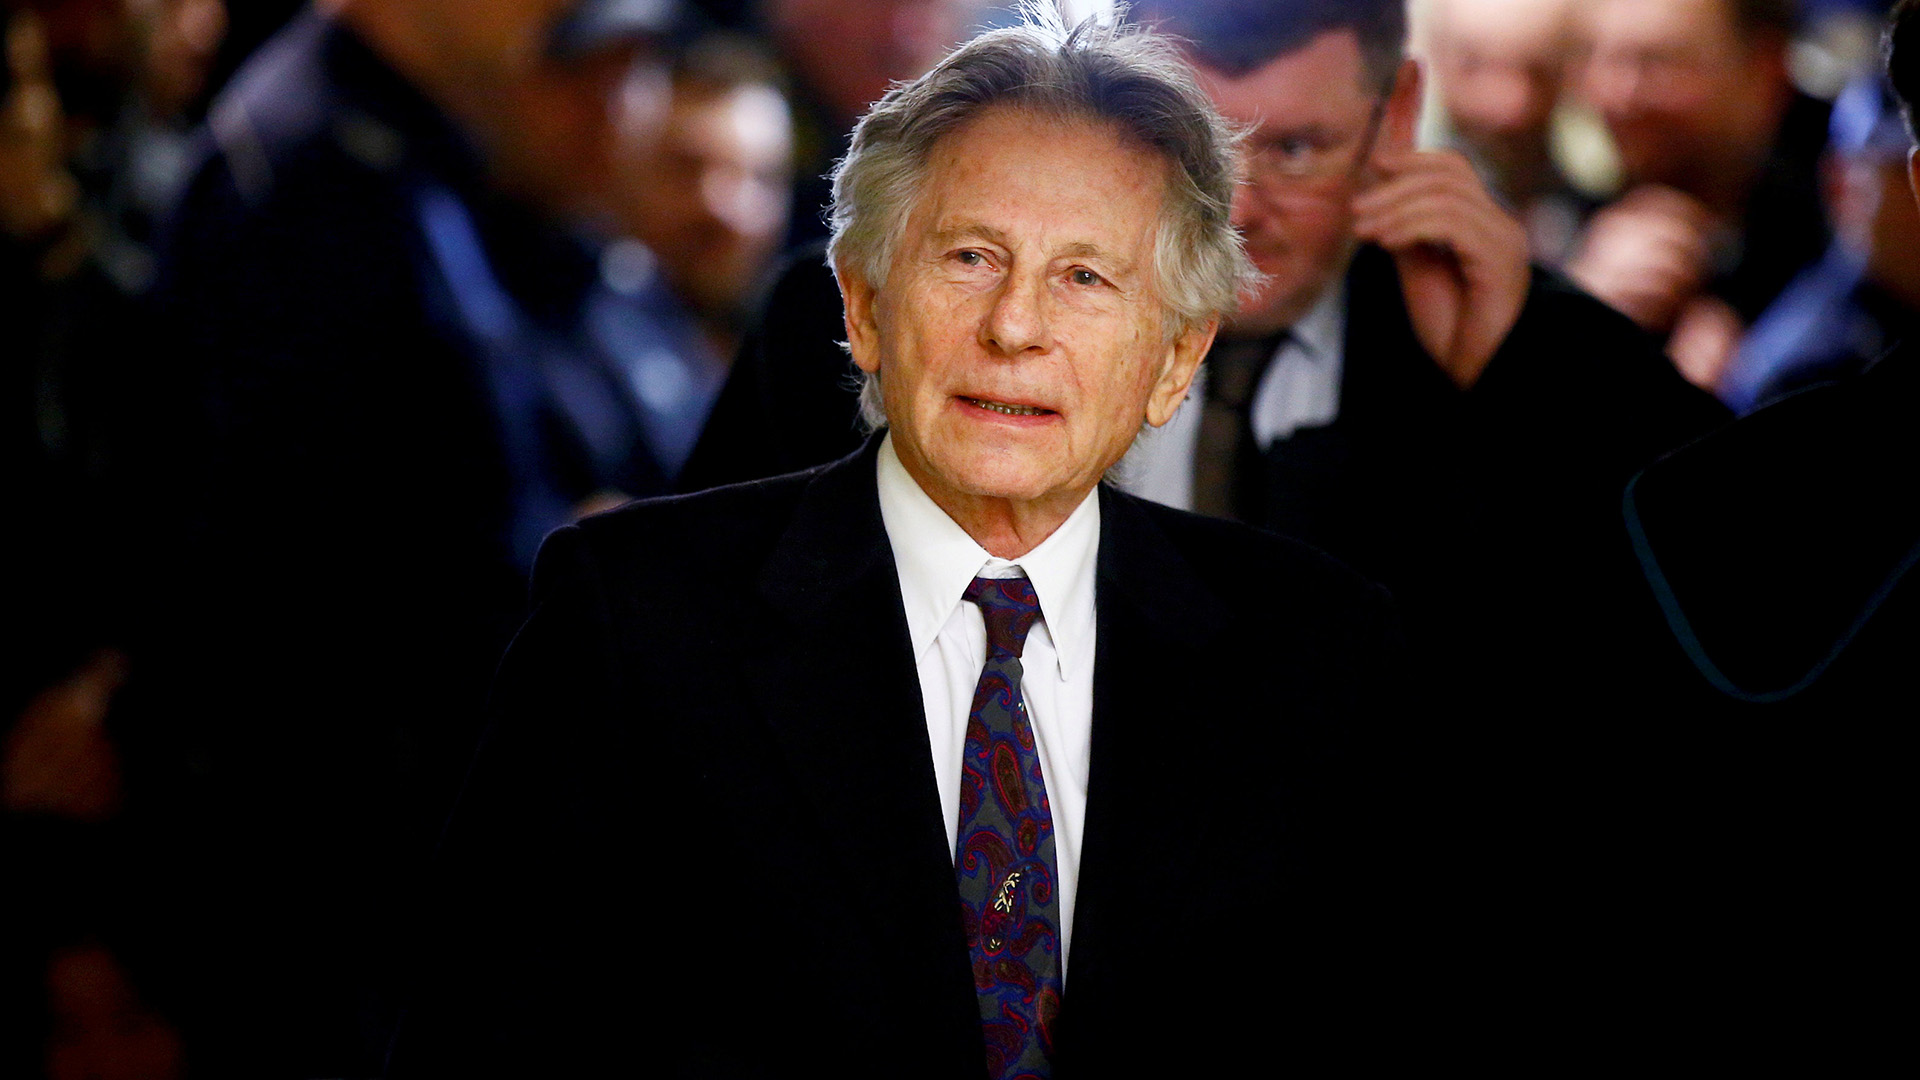 Un juez rechaza cerrar el caso de abusos sexuales contra Roman Polanski